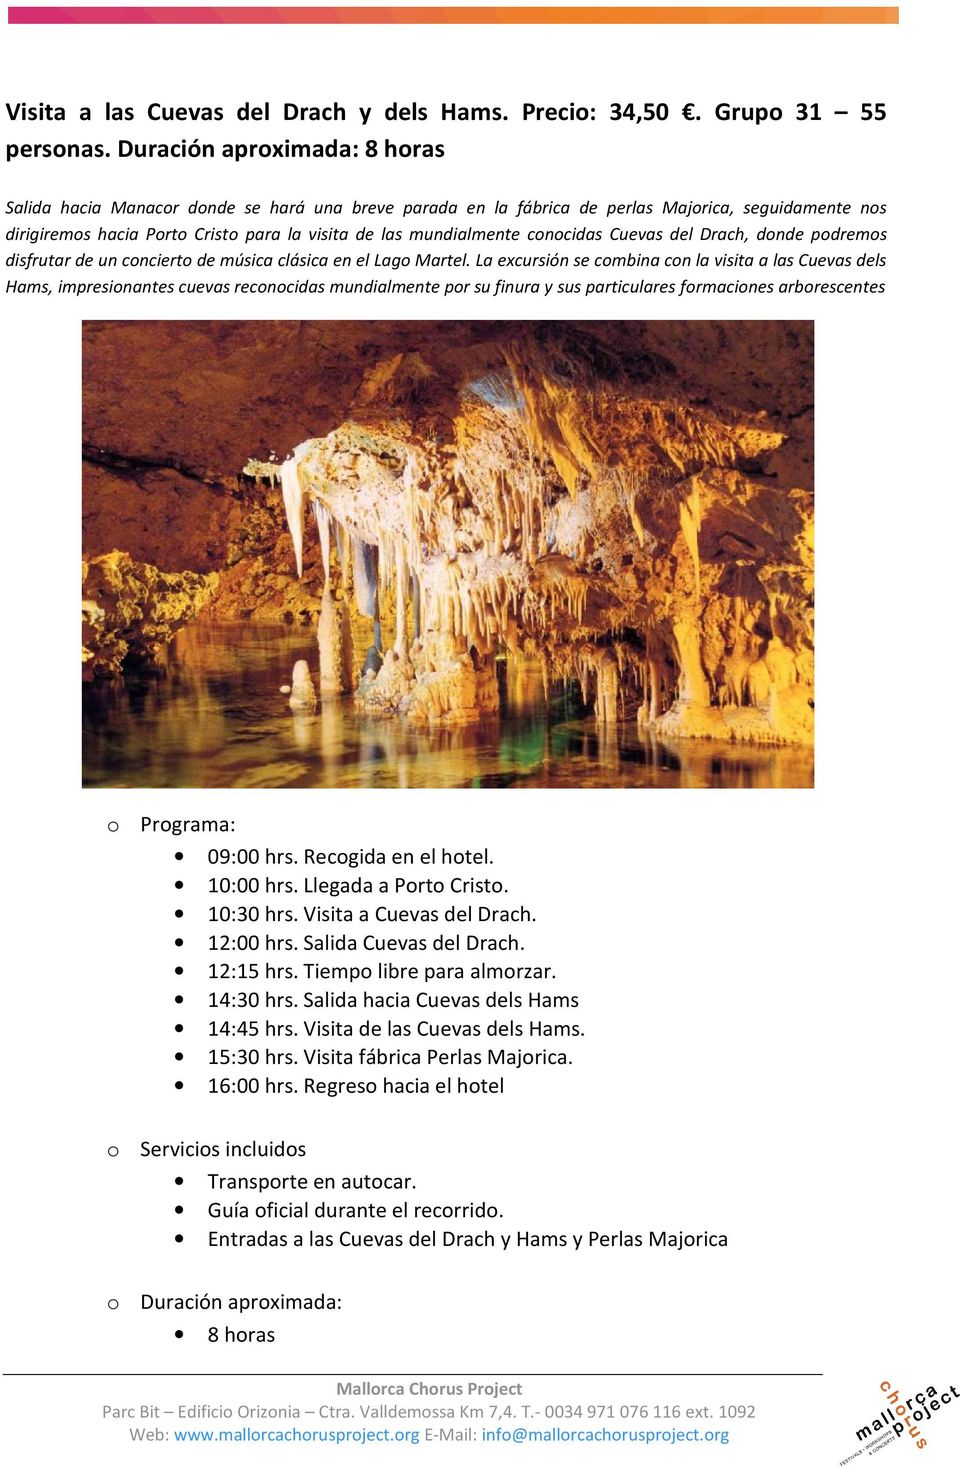 conocidas Cuevas del Drach, donde podremos disfrutar de un concierto de música clásica en el Lago Martel.